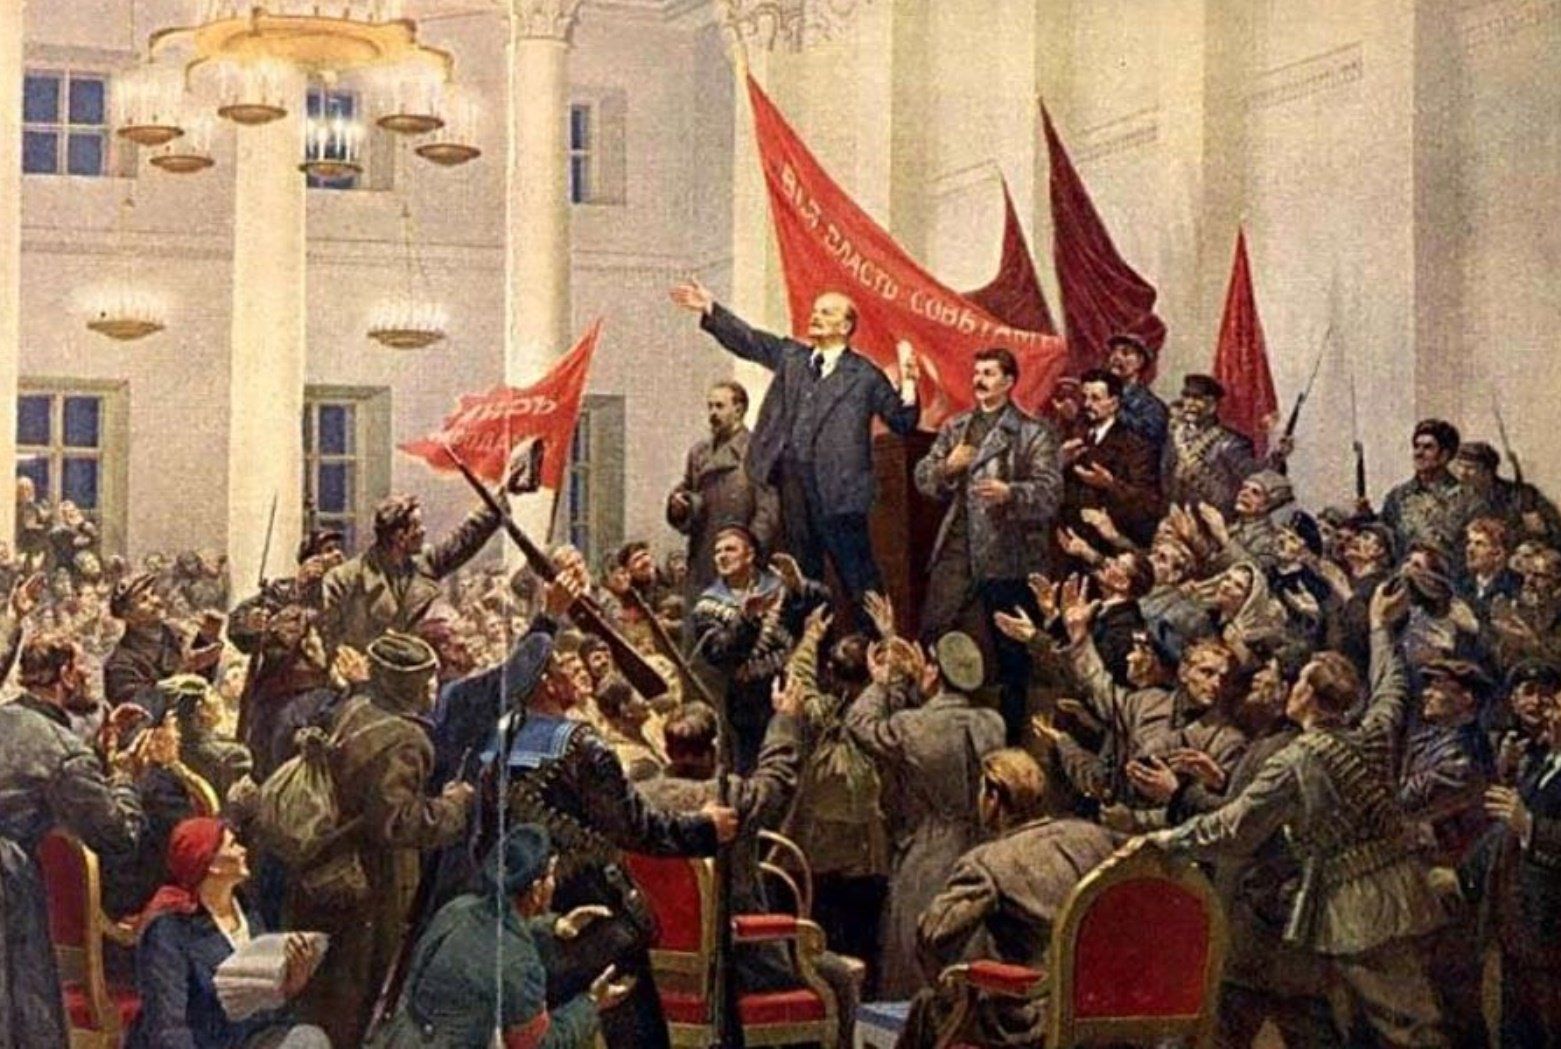 Nếu bạn yêu thích lịch sử, hãy không bỏ lỡ cơ hội chiêm ngưỡng những hình ảnh cách mạng tháng 10 Nga. Đây là một giai đoạn quan trọng trong lịch sử thế giới khi một cách mạng lớn đã xảy ra, hãy đến với những tấm ảnh này để cảm nhận lại những giây phút lịch sử đầy kinh ngạc và hy vọng.